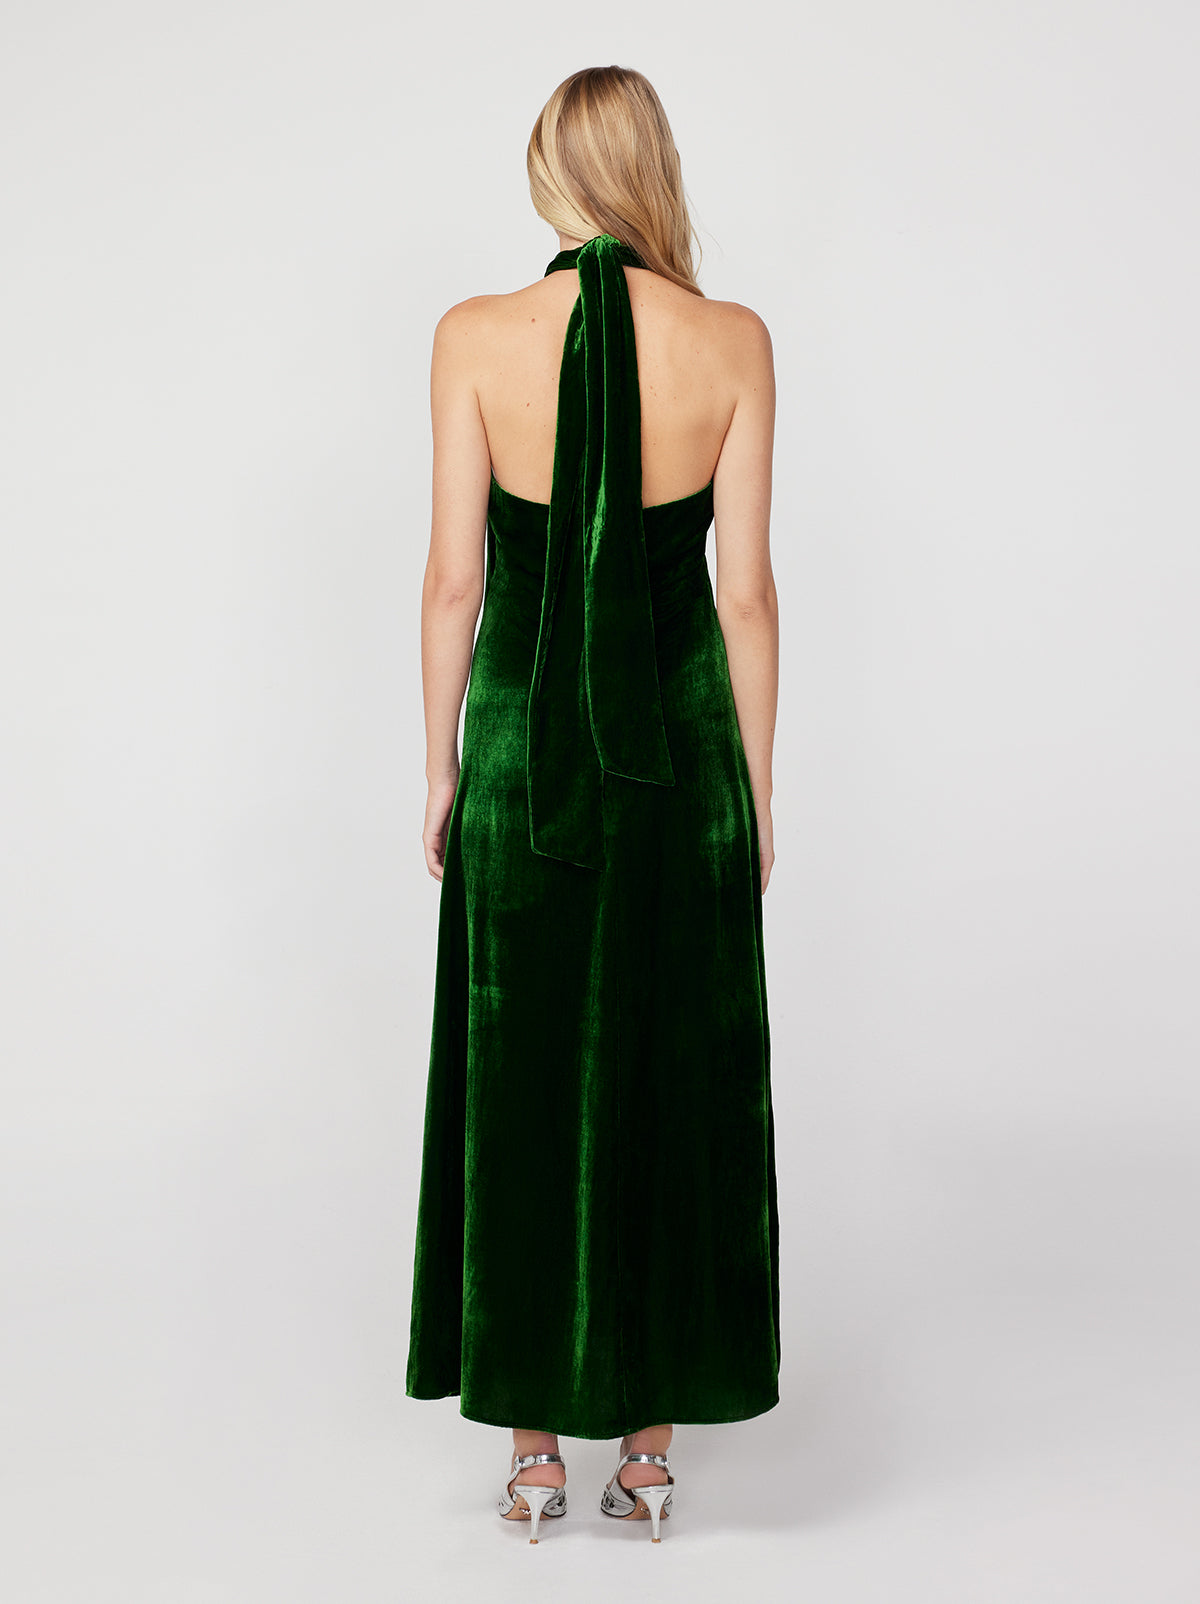 Neve Green Velvet Halter Dress By KITRI Studio